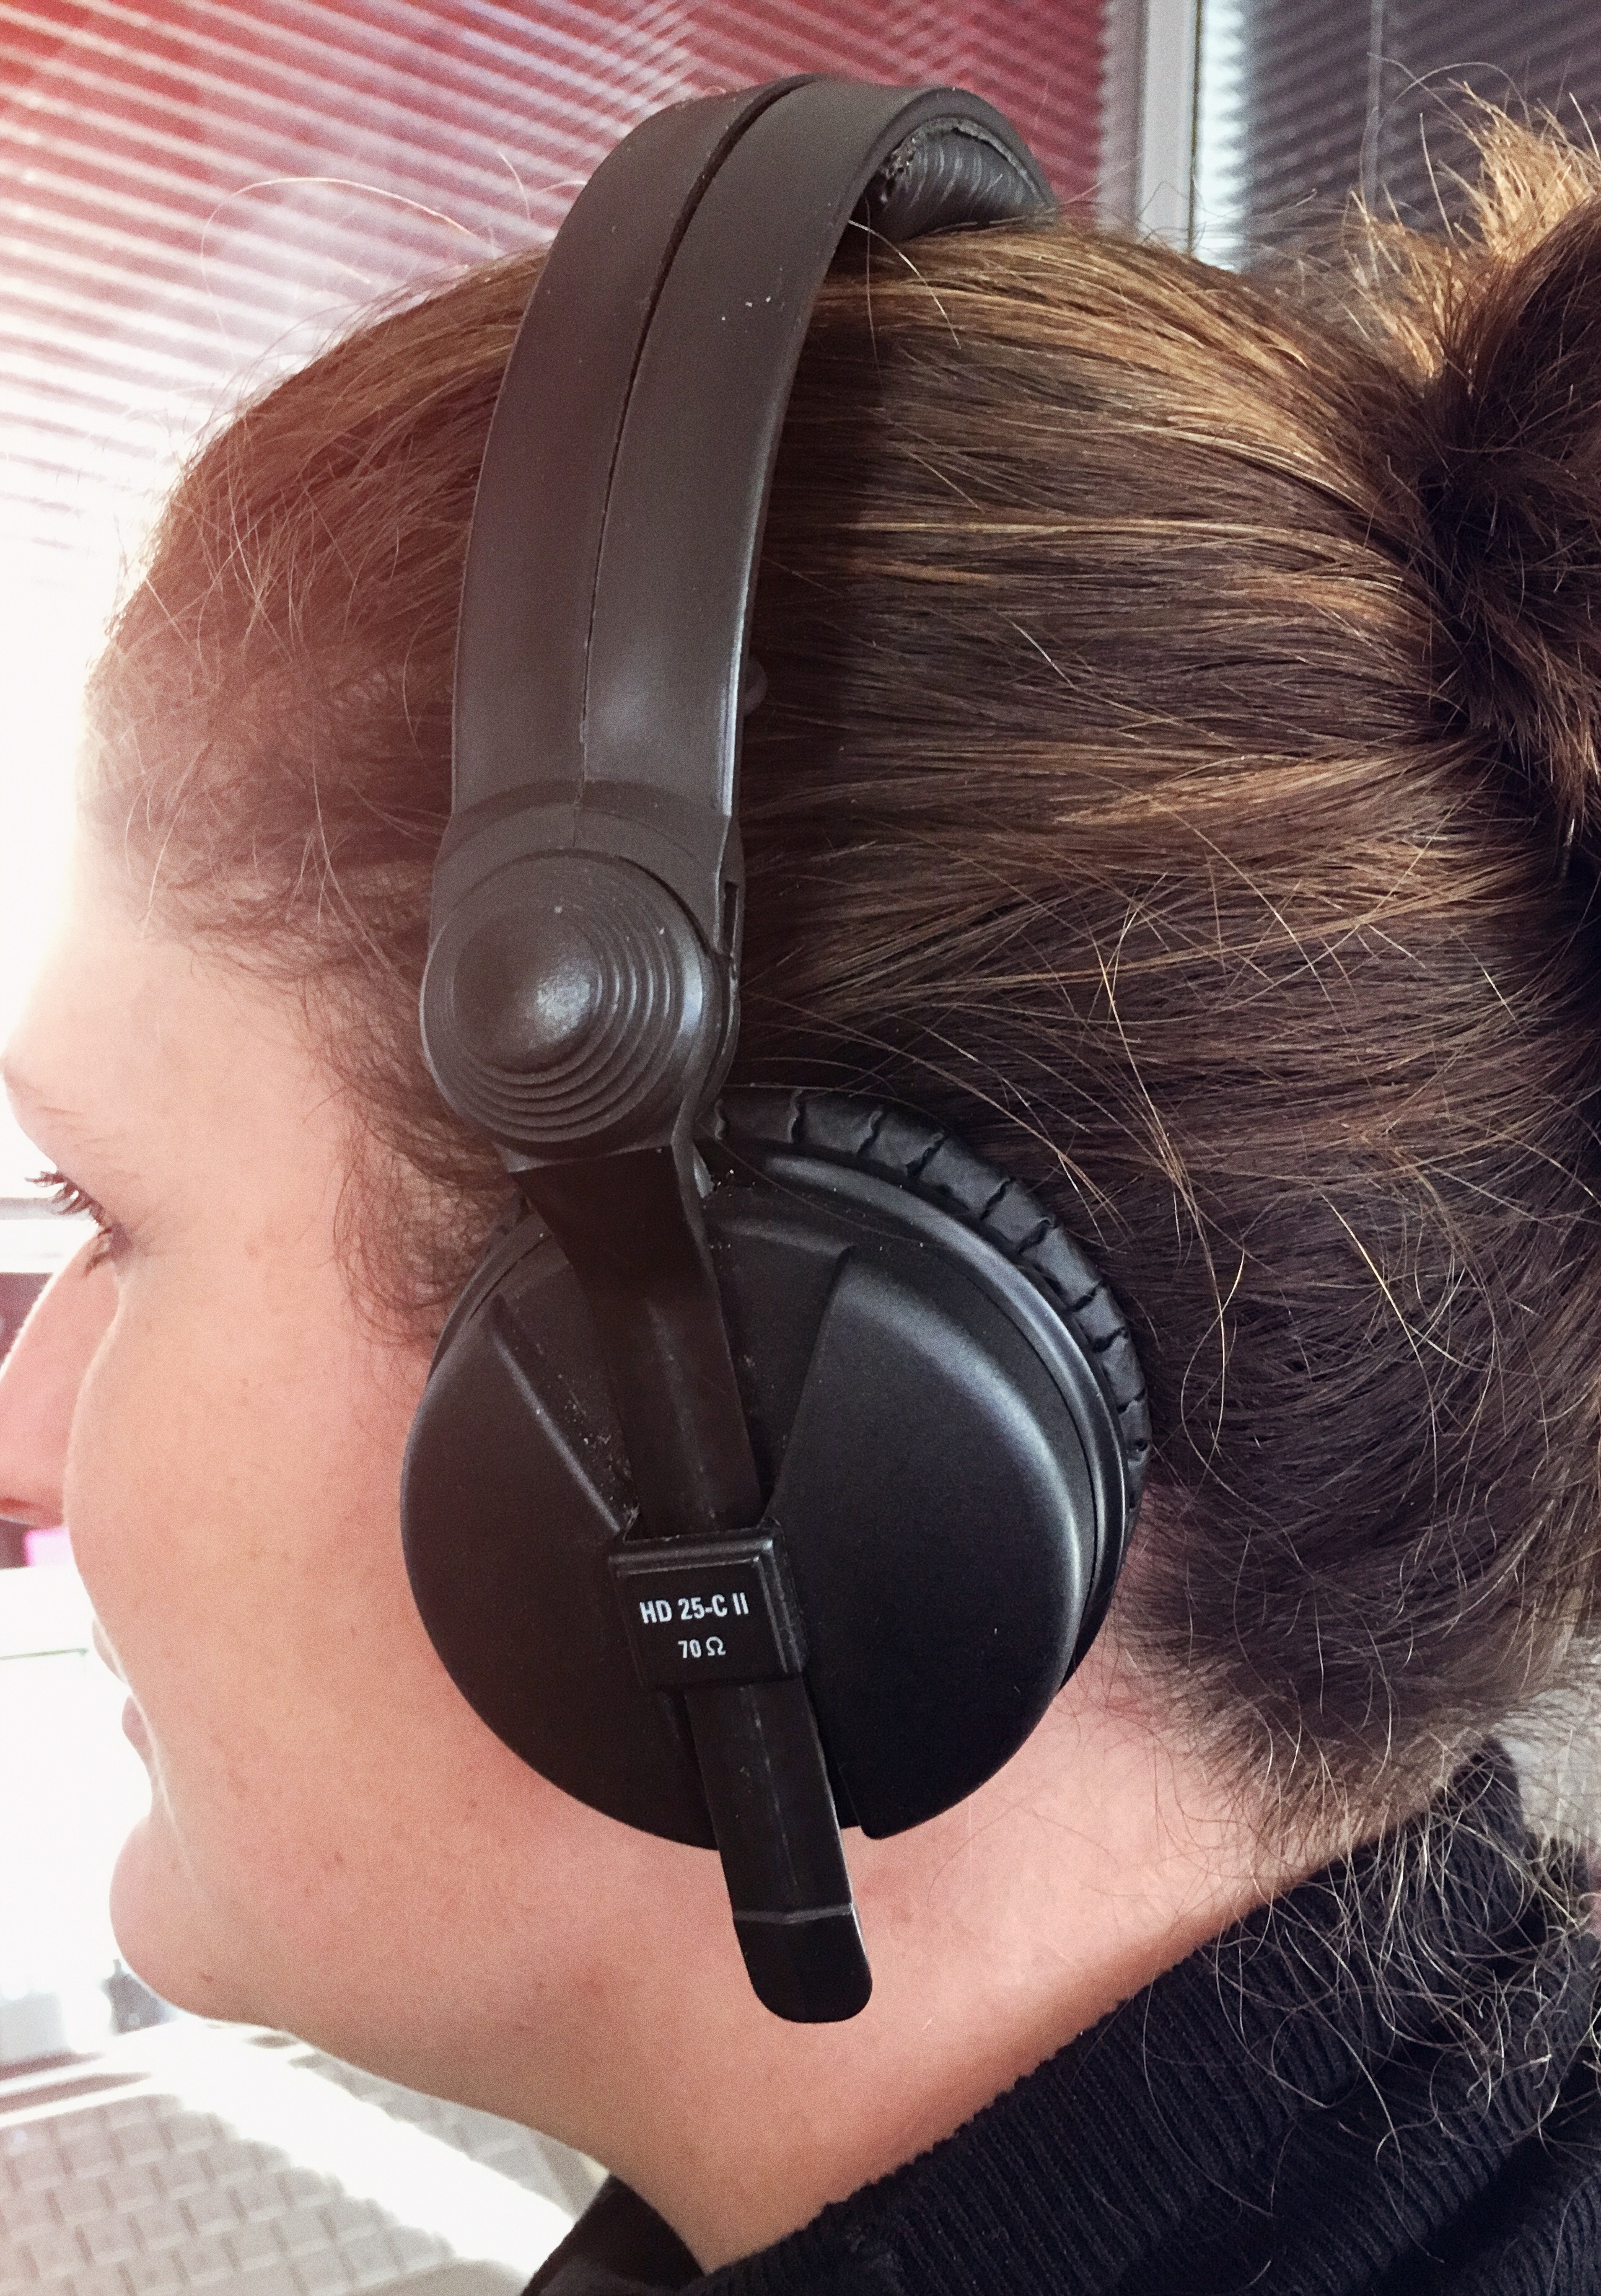 Test Sennheiser HD-300 Pro casque audio fermé pour le studio - Audiofanzine